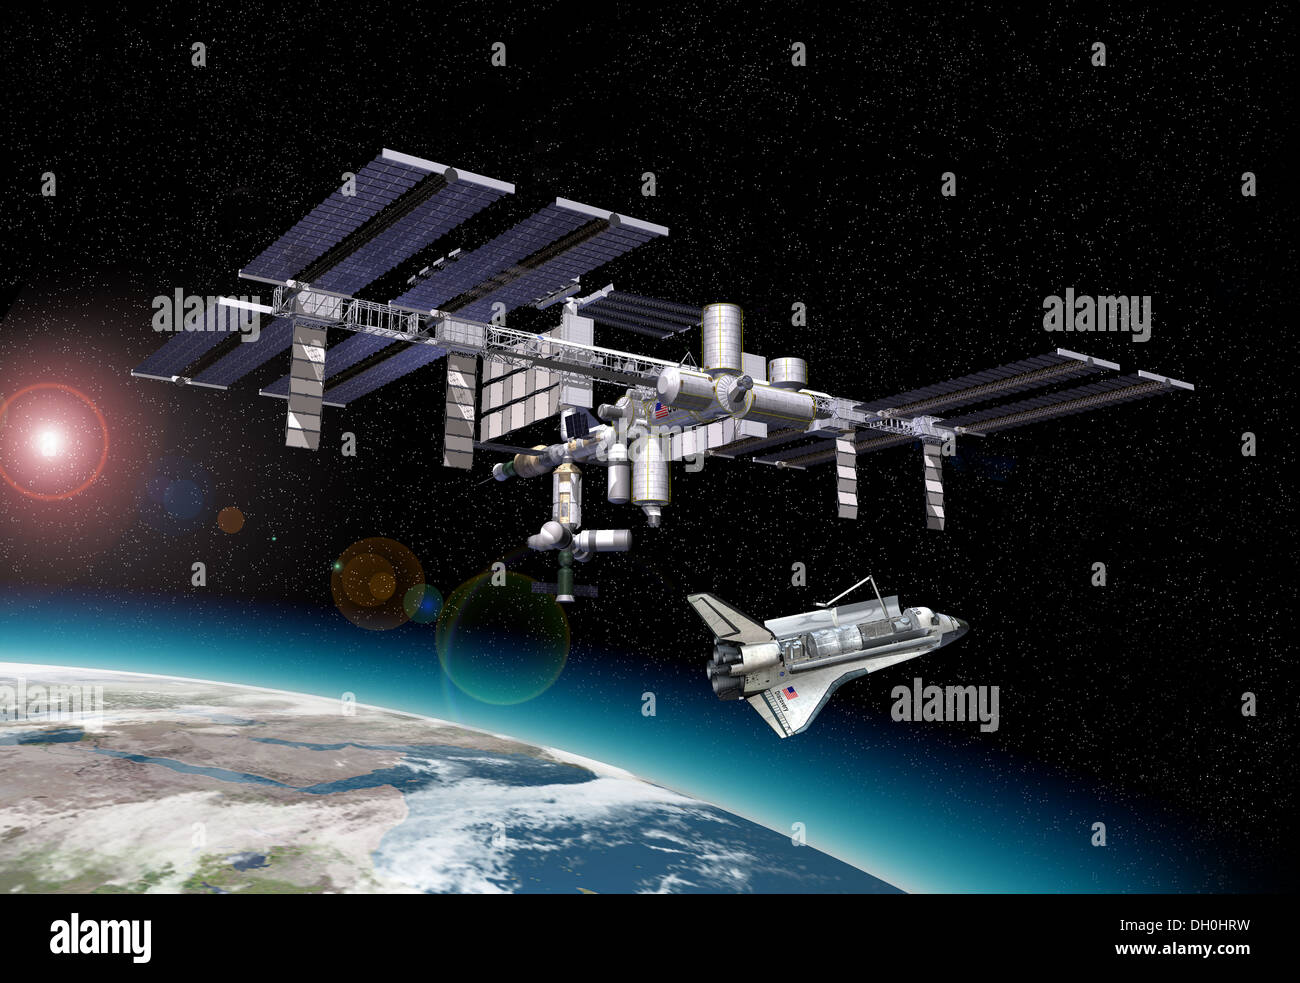 Station spatiale internationale (ISS) en orbite autour de la Terre, à l'aéroport. avec quelques effets starlights et la terre en bas. Banque D'Images